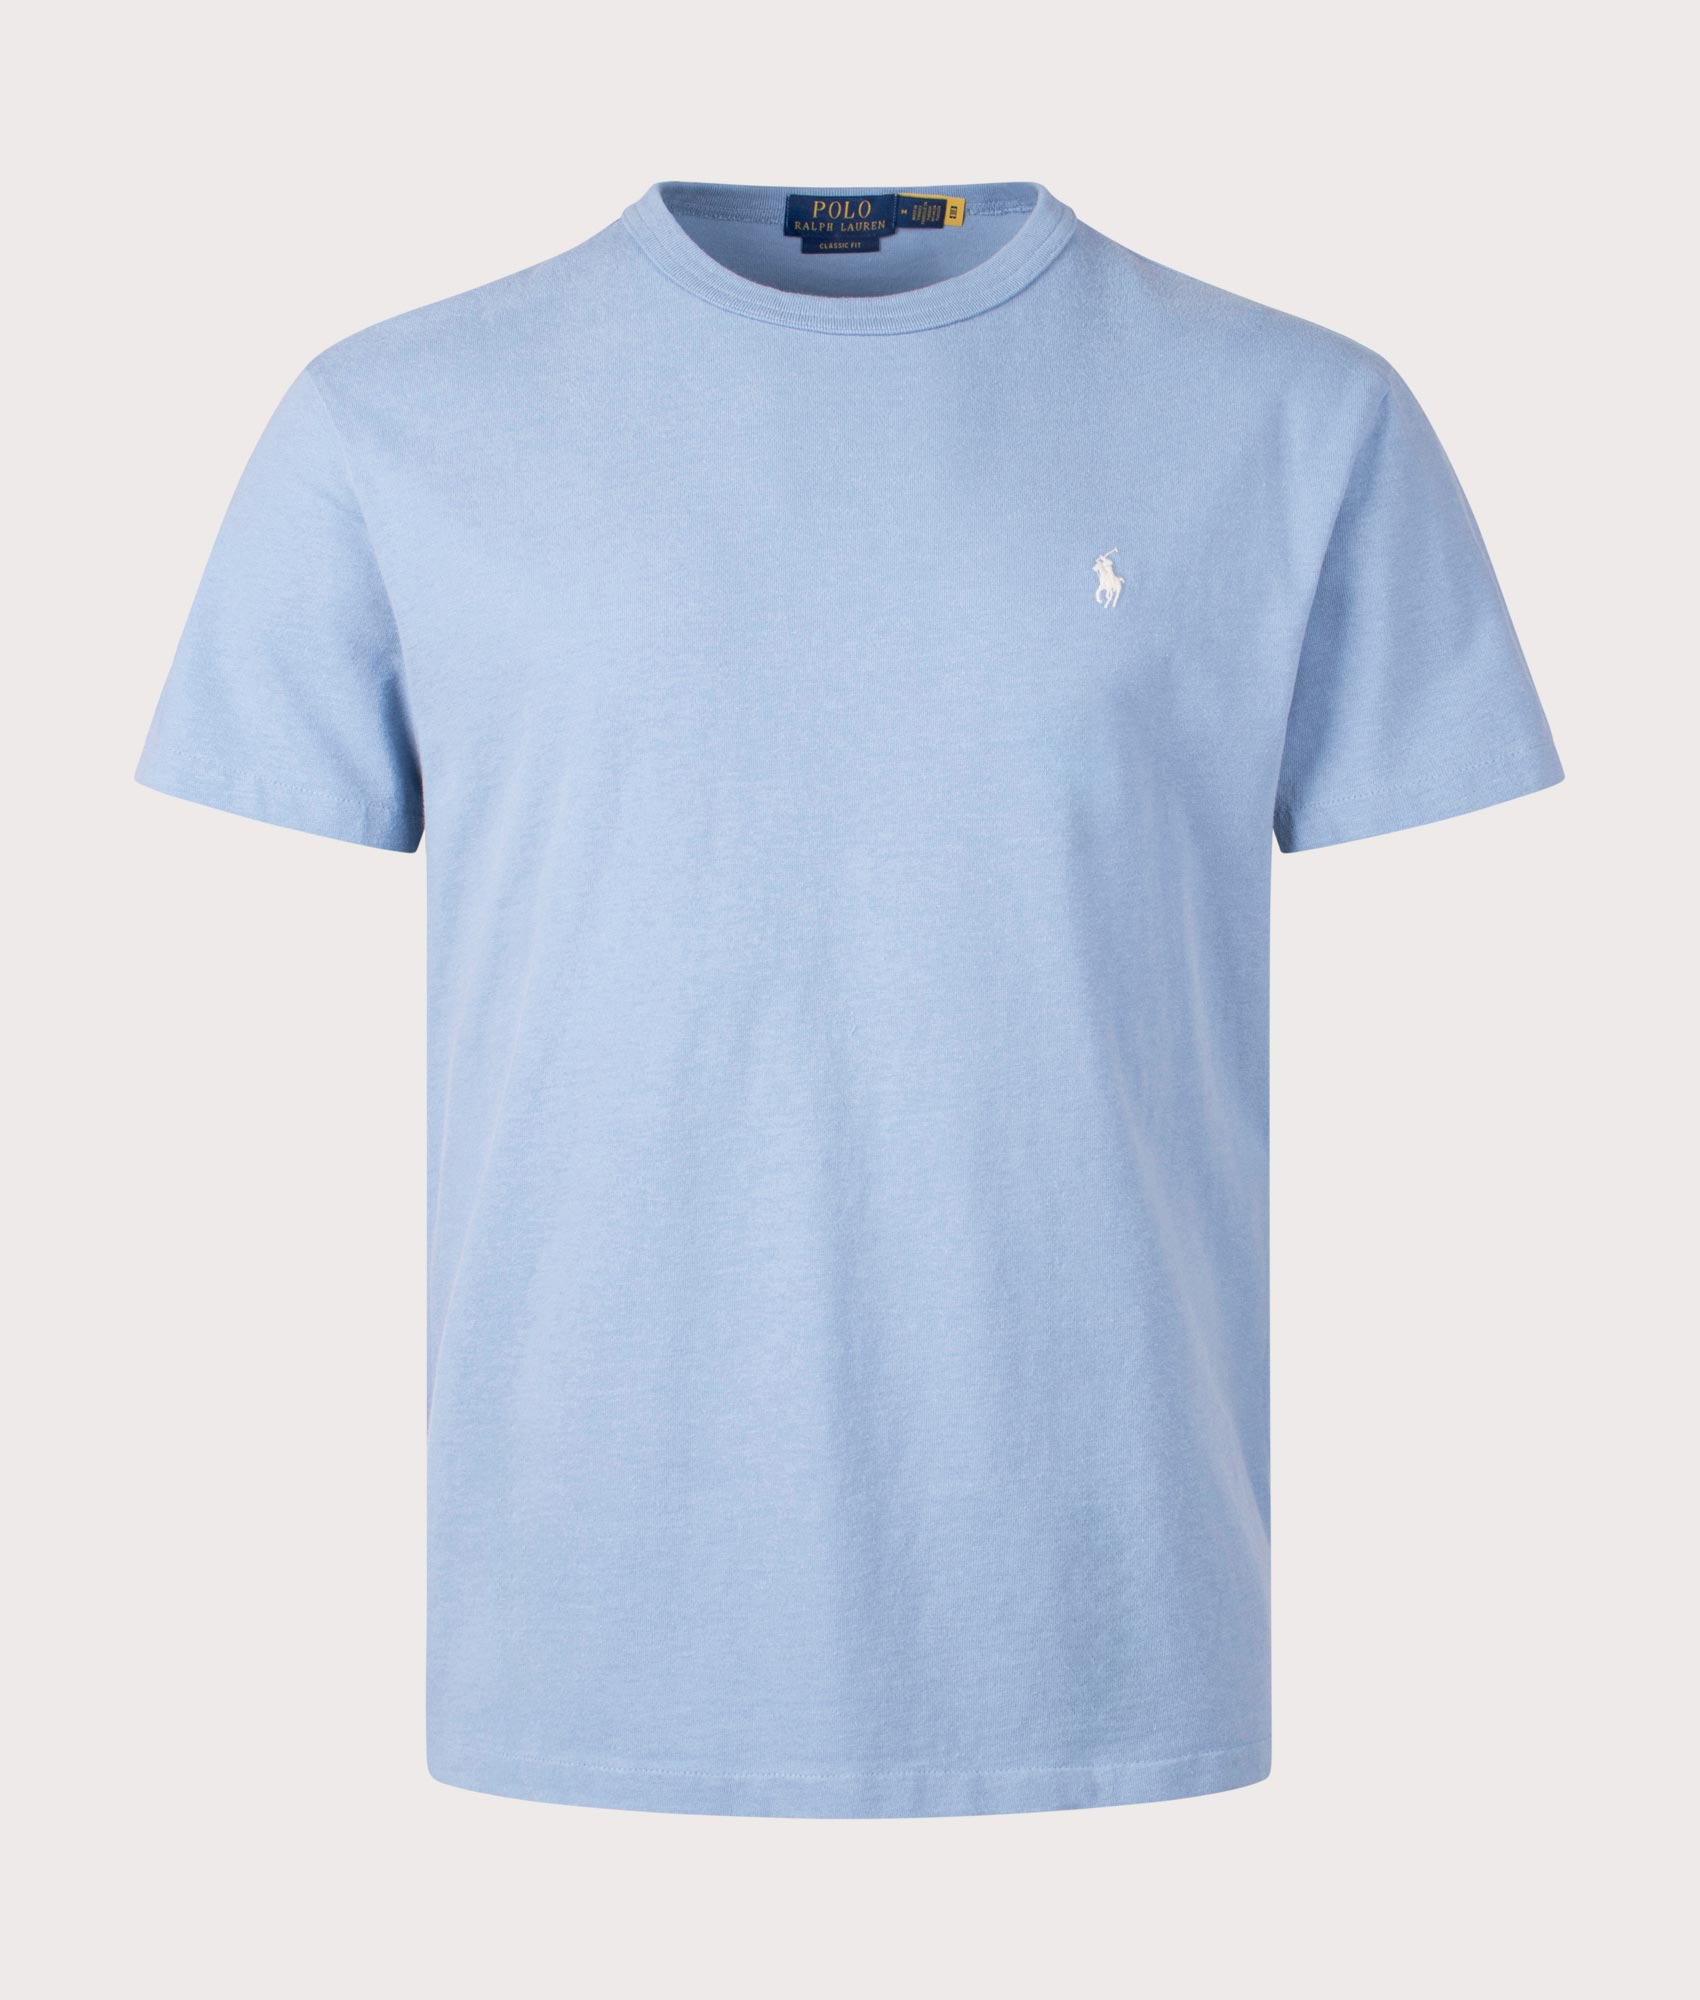 Polo Ralph Lauren Mens Classic Fit Jersey T-Shirt - Colour: 014 Channel Blue - Size: XXL